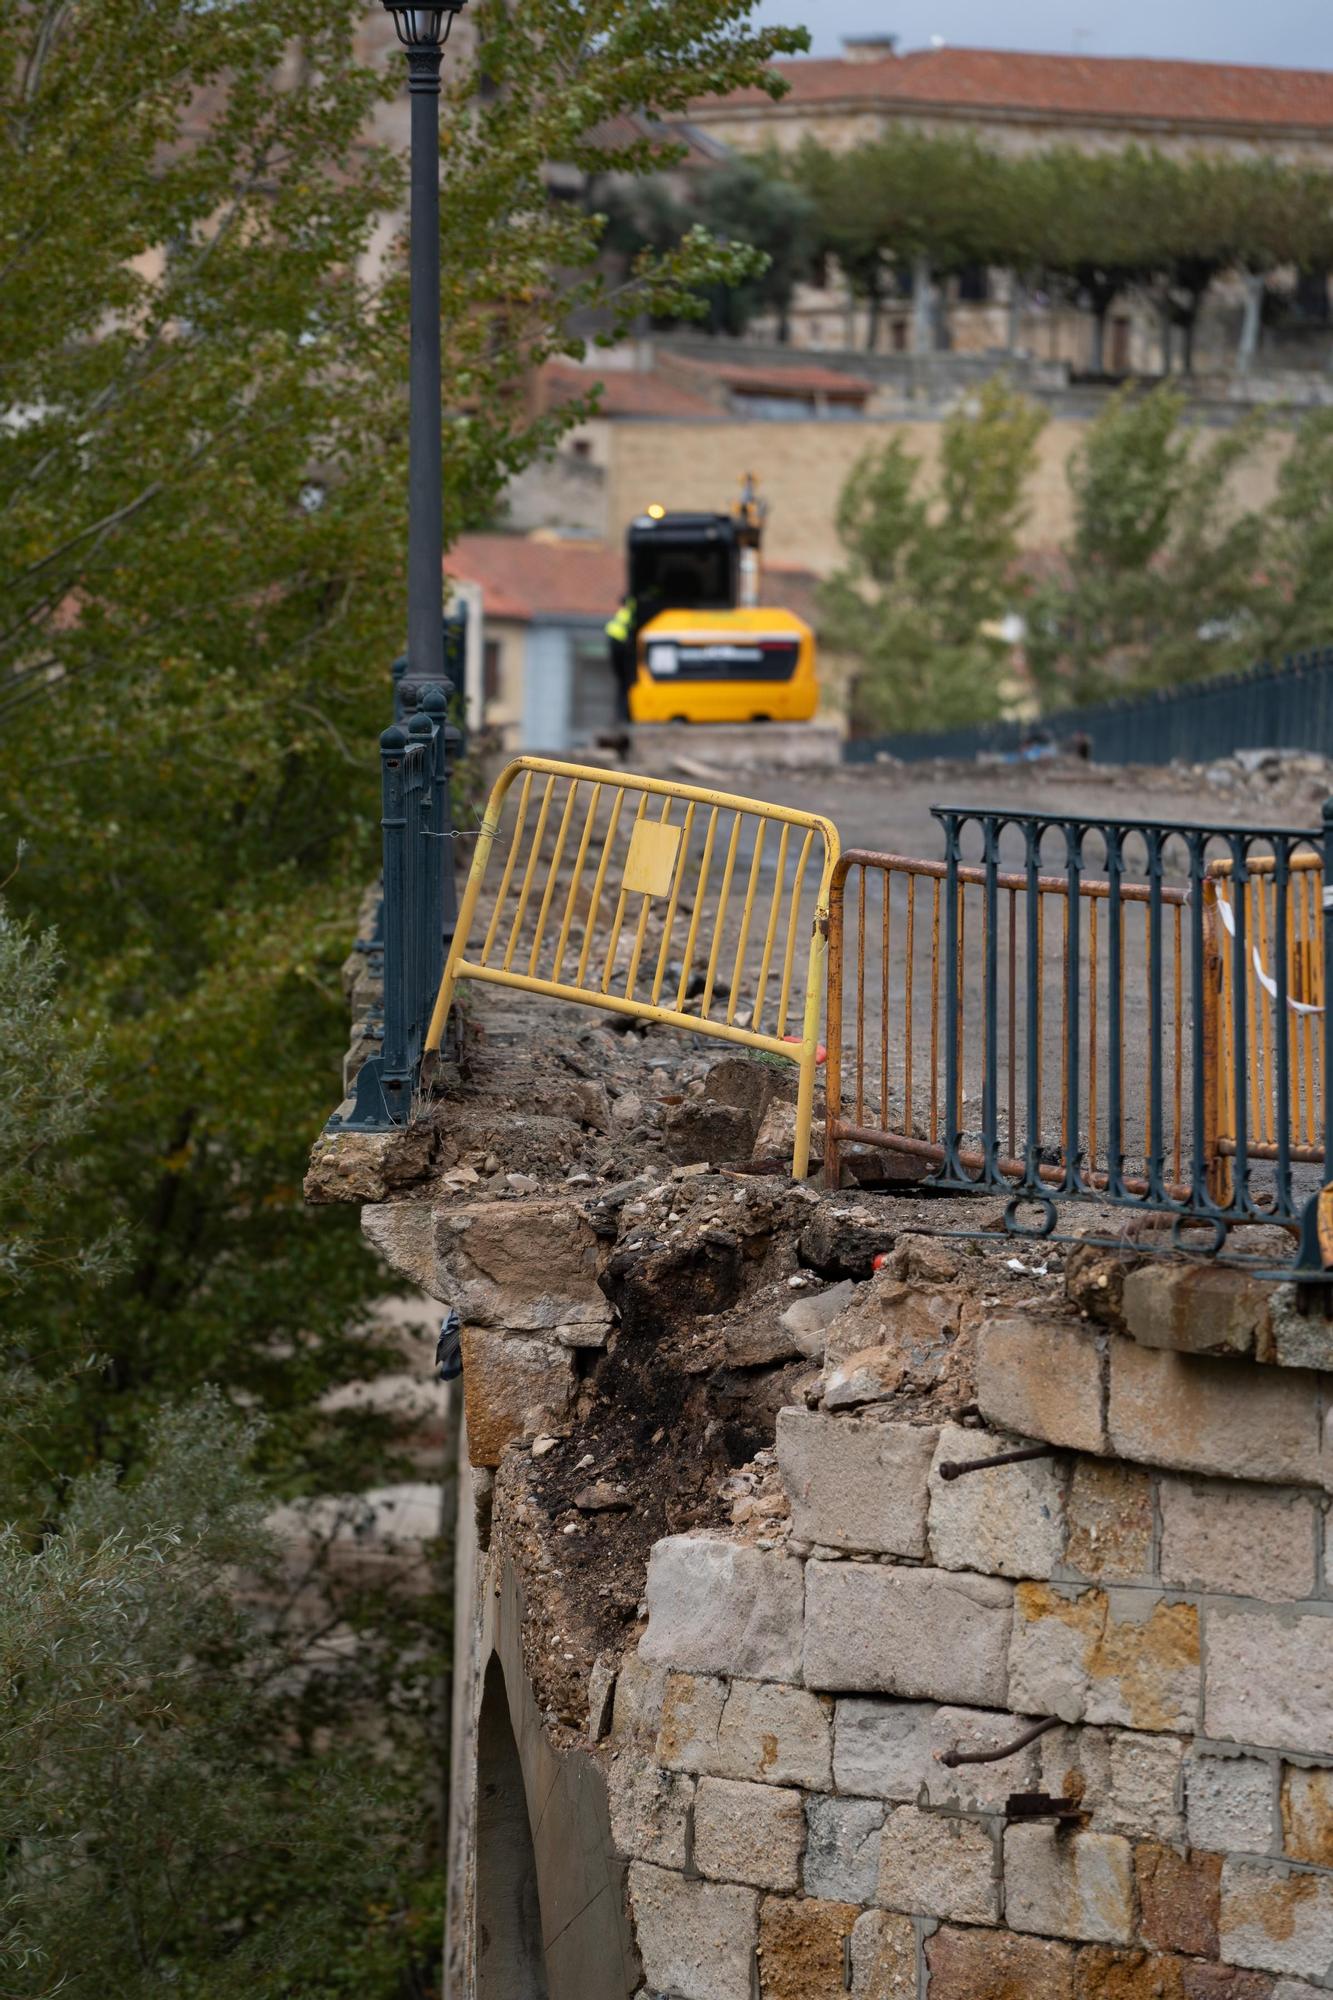 GALERÍA | Varios sillares del Puente de Piedra se desprenden al retirar parte de la barandilla